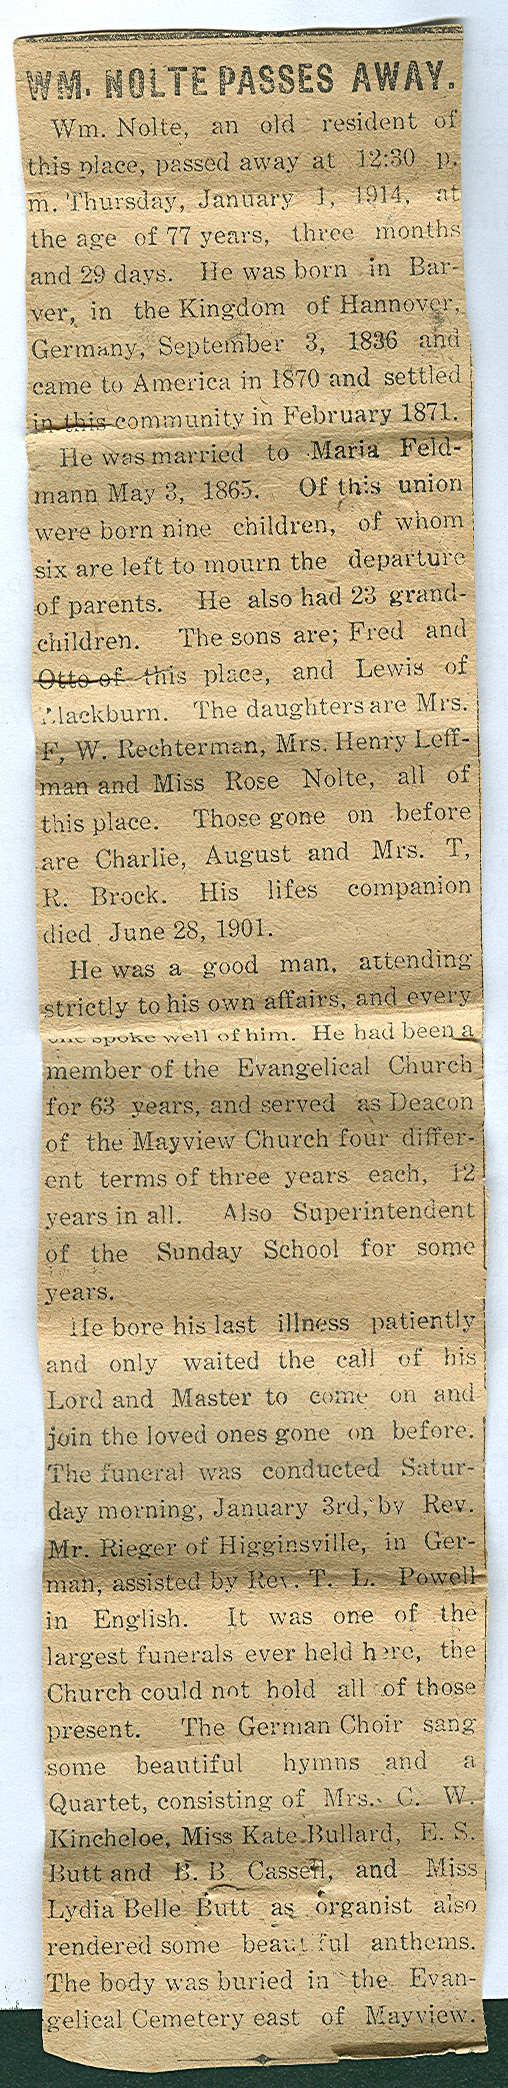 Enlarged image of the 1914 English-language obituary